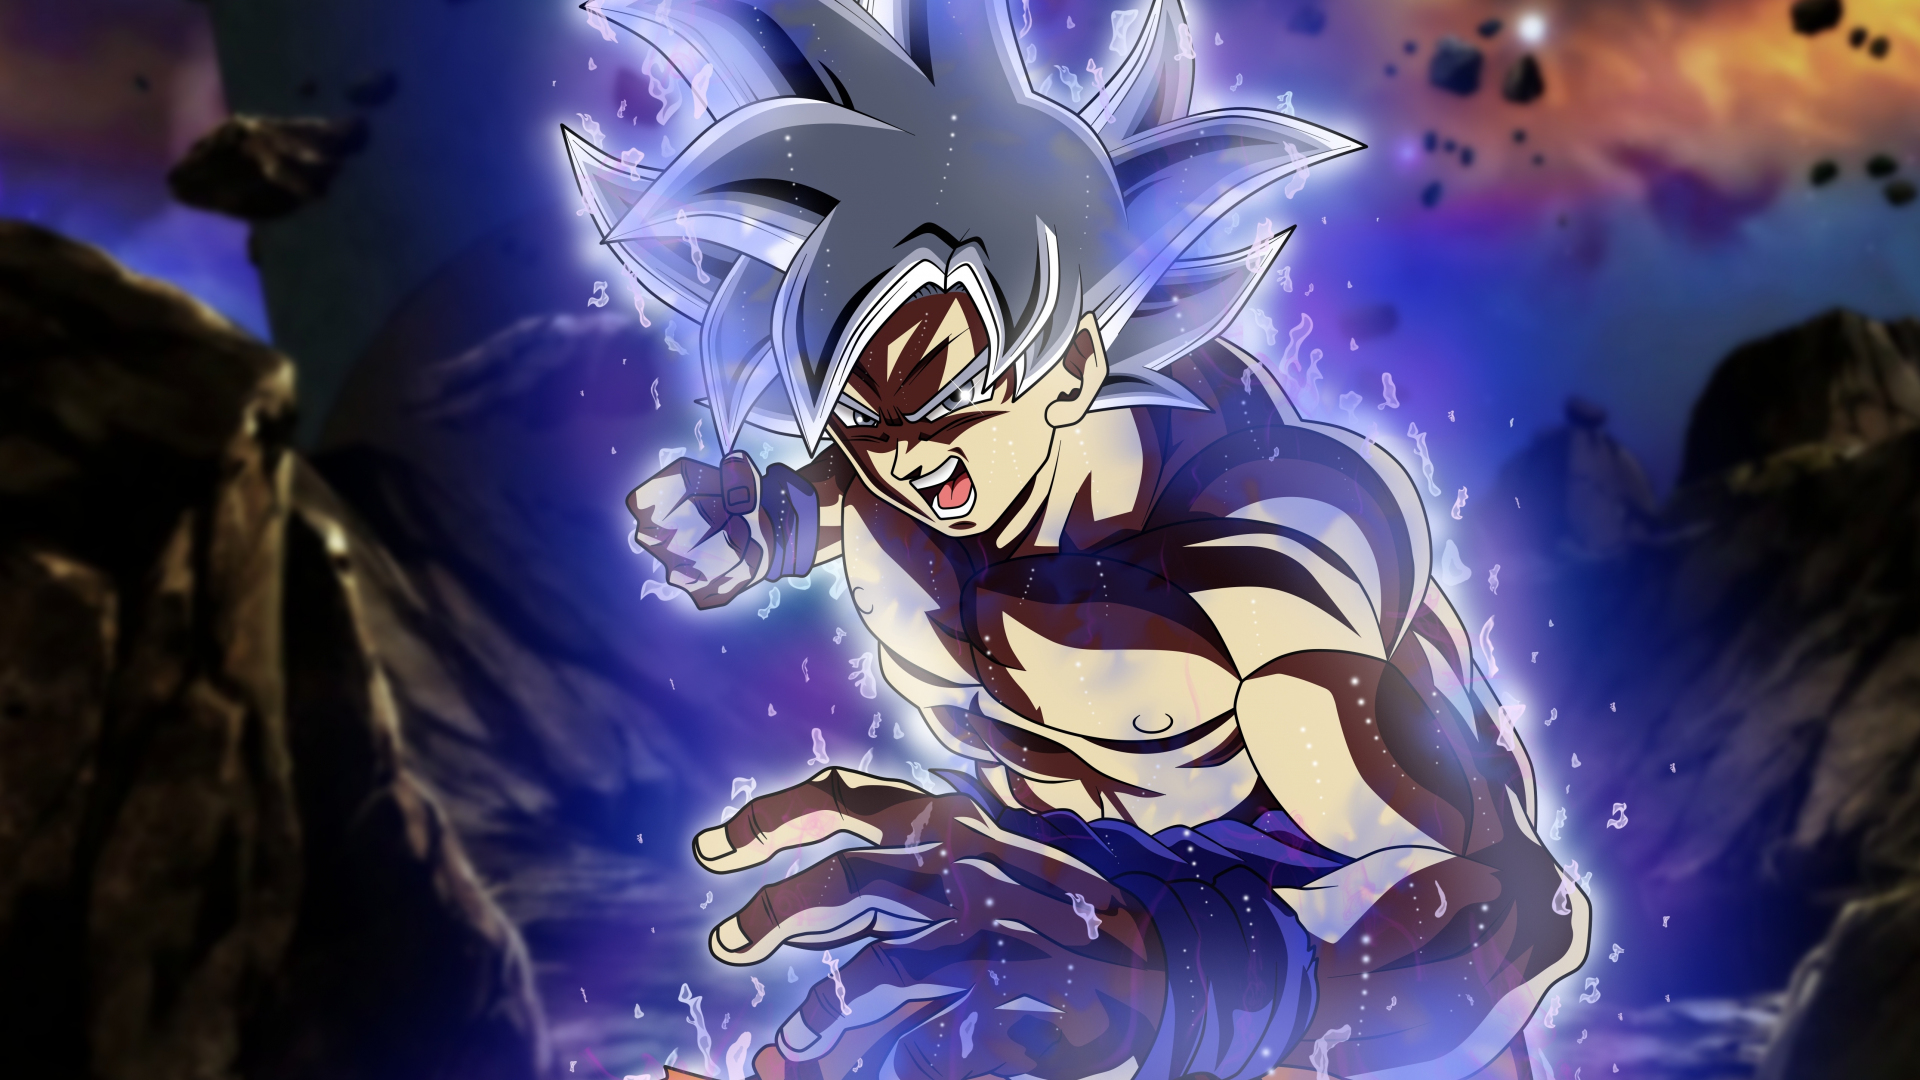 Download 1920x1080 Wallpaper Ultra Instinct Shirtless Anime Boy Goku